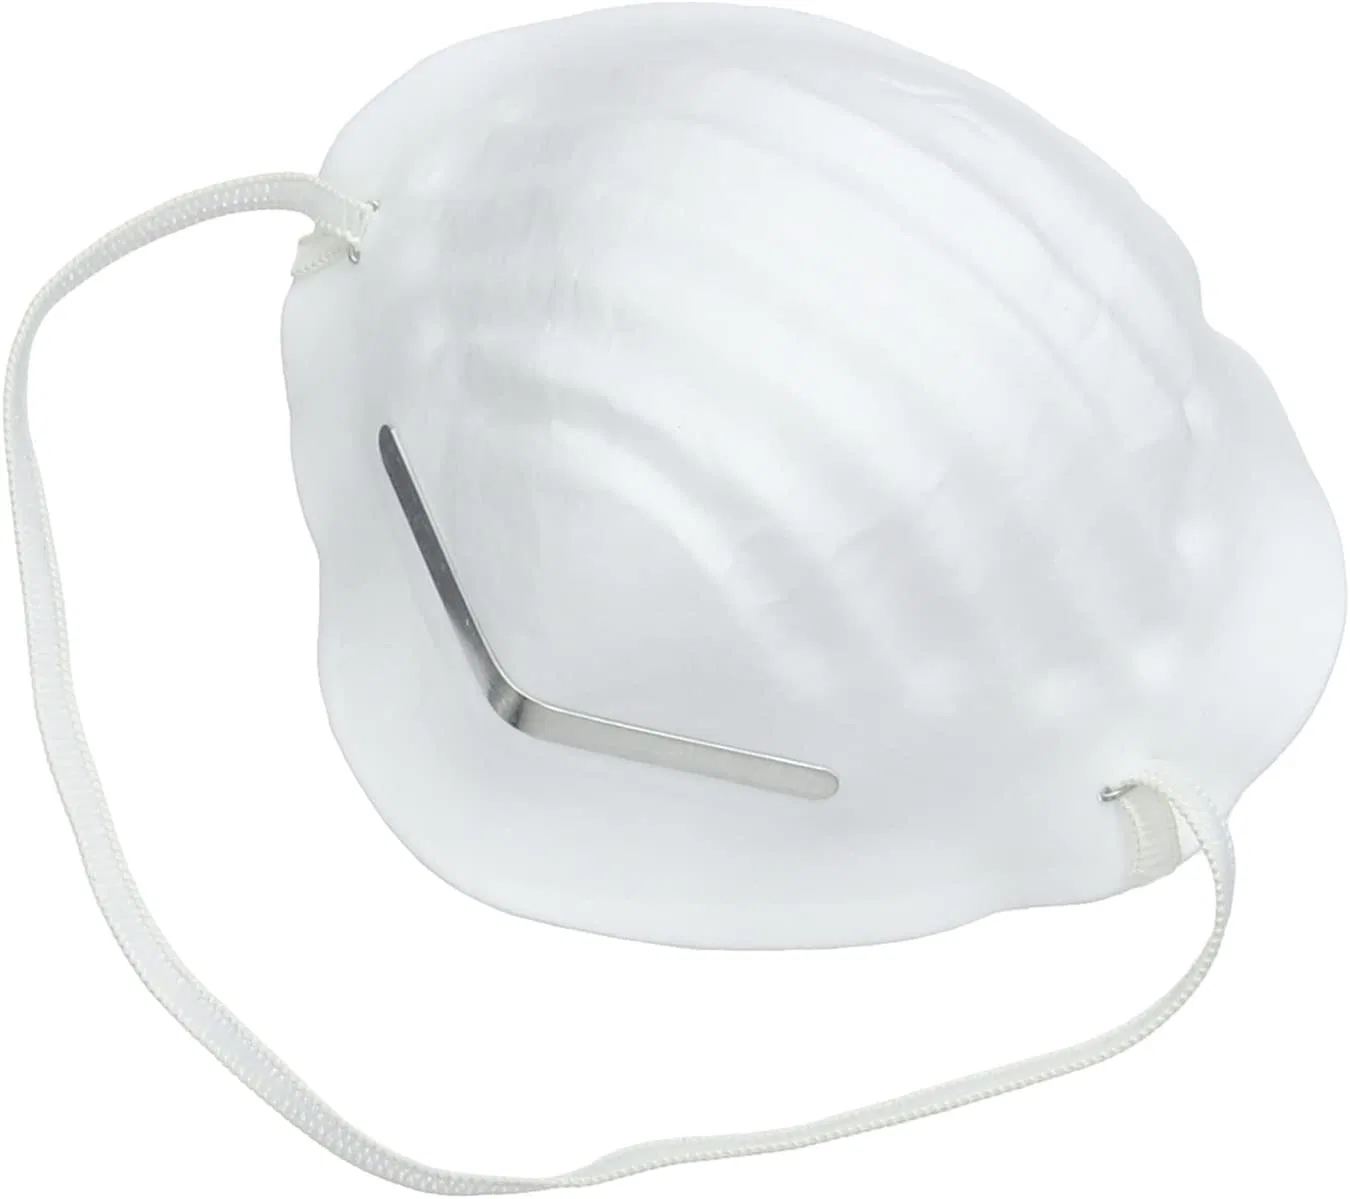 Máscara respiratória descartável, aprovada pela CE, não entrançada, branca, máscara antipoeira industrial Máscara facial de proteção de segurança de mão-de-obra